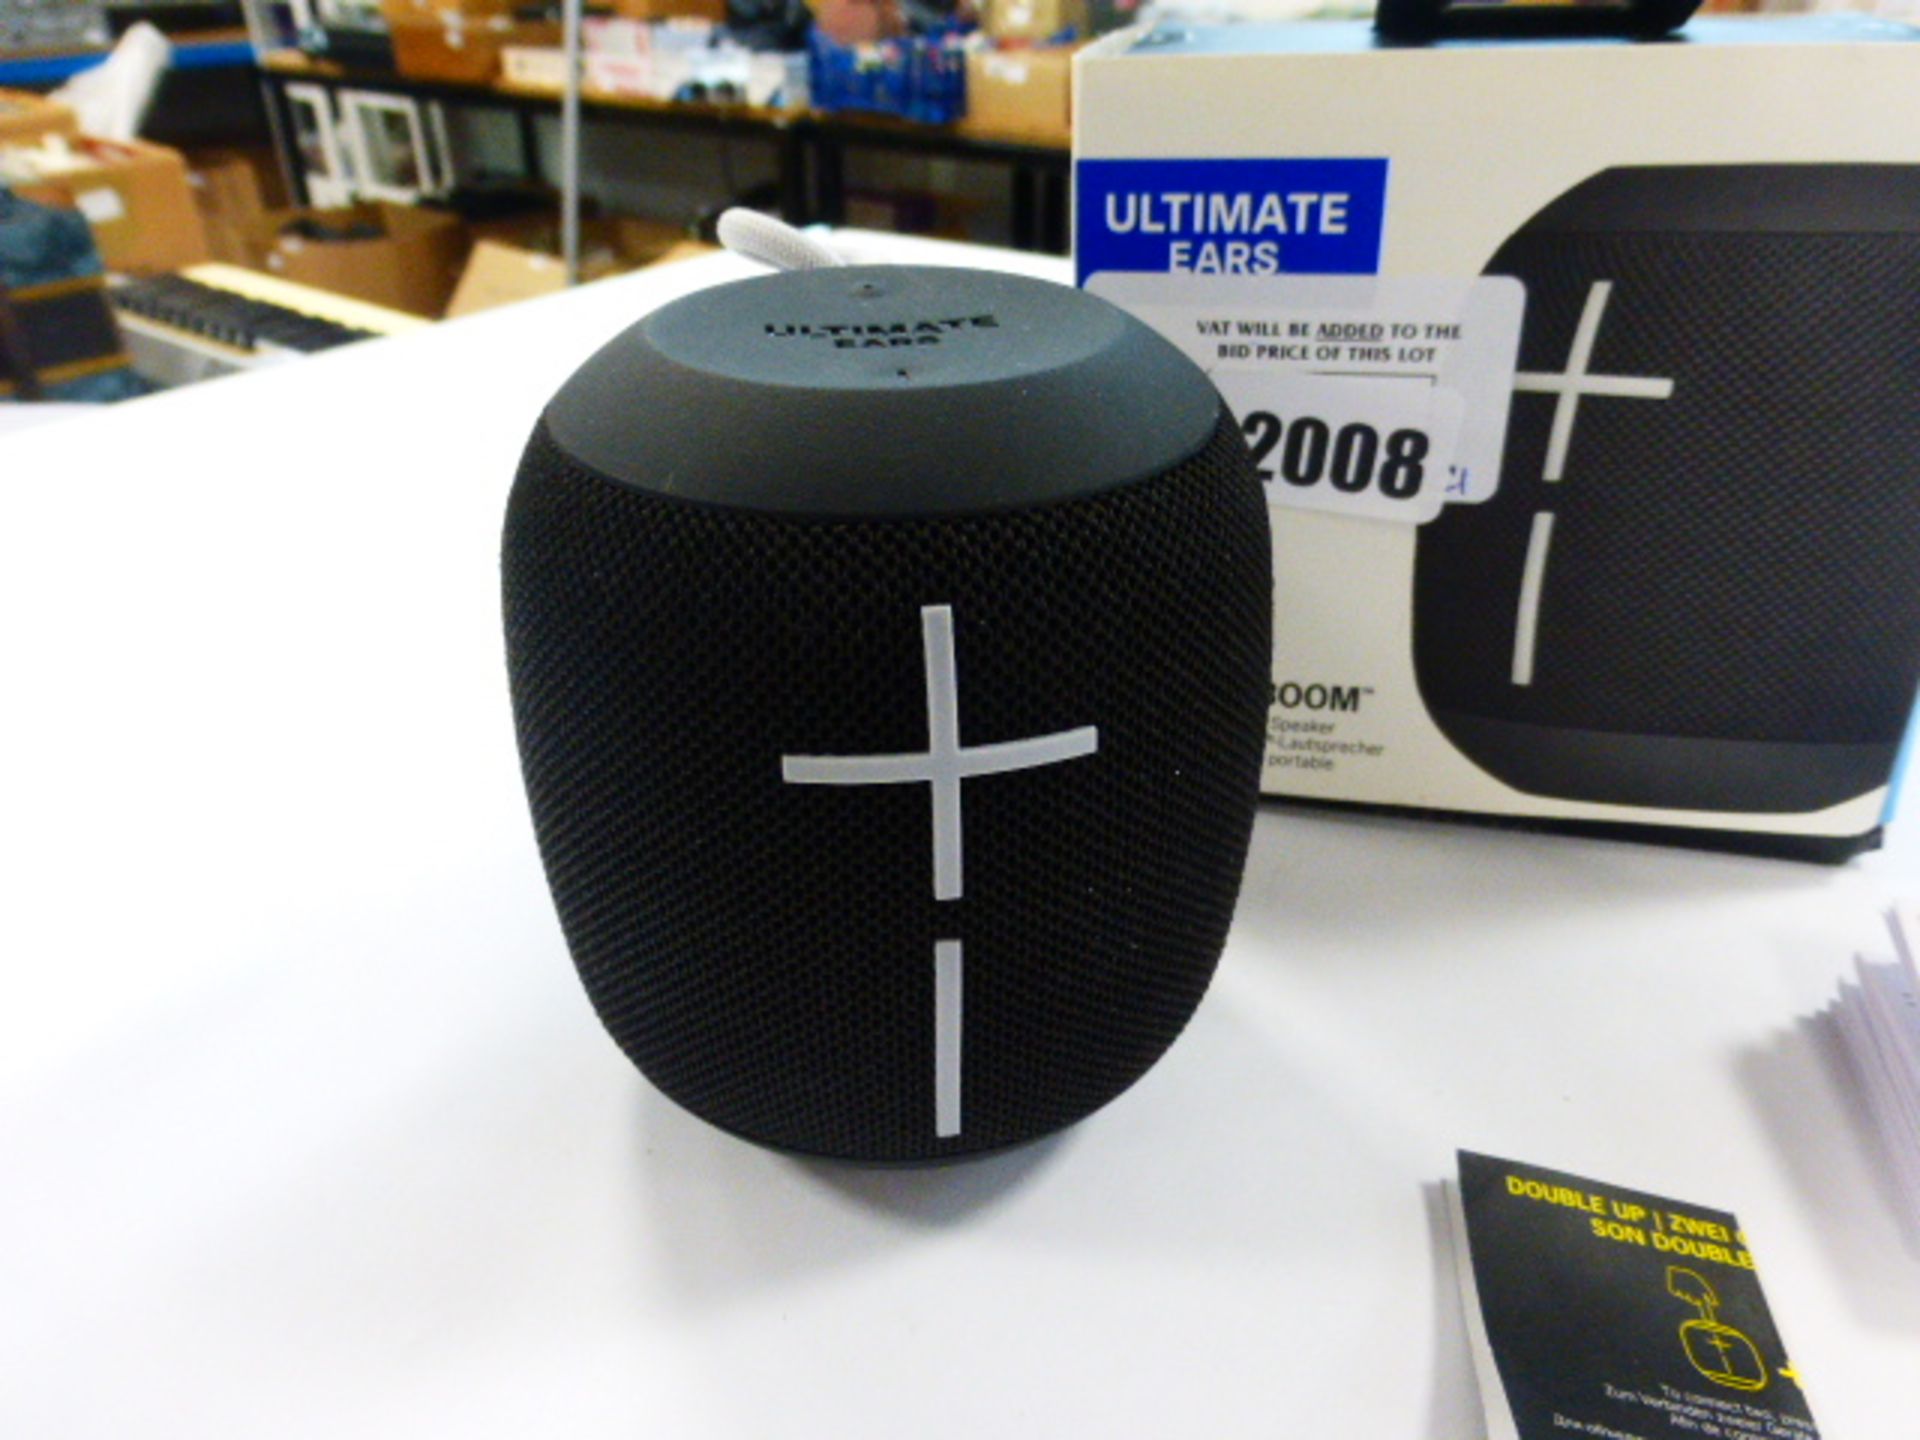 Ultimate Ears Wonderboom bluetooth speaker in box - Image 2 of 2